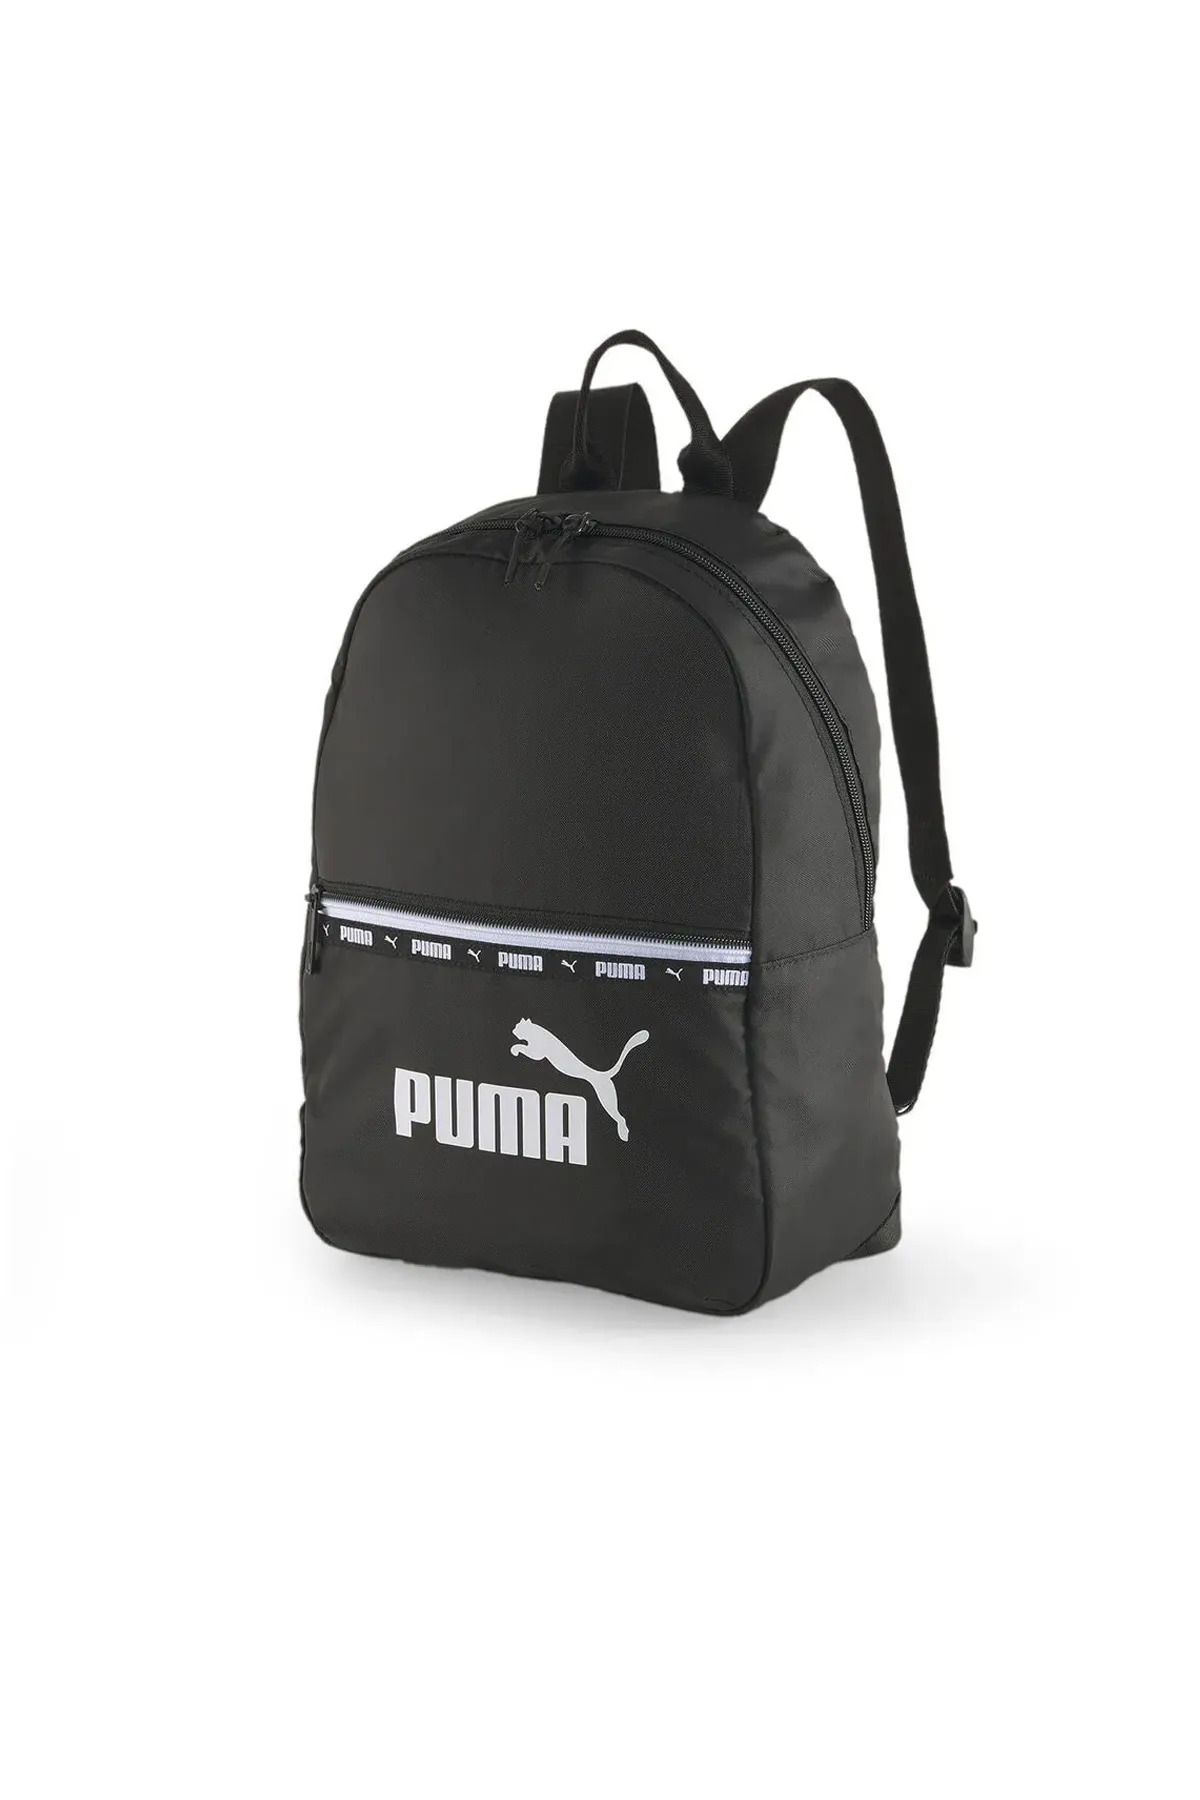 Puma Core Her Backpack Kadın Çanta 79486-04 Black